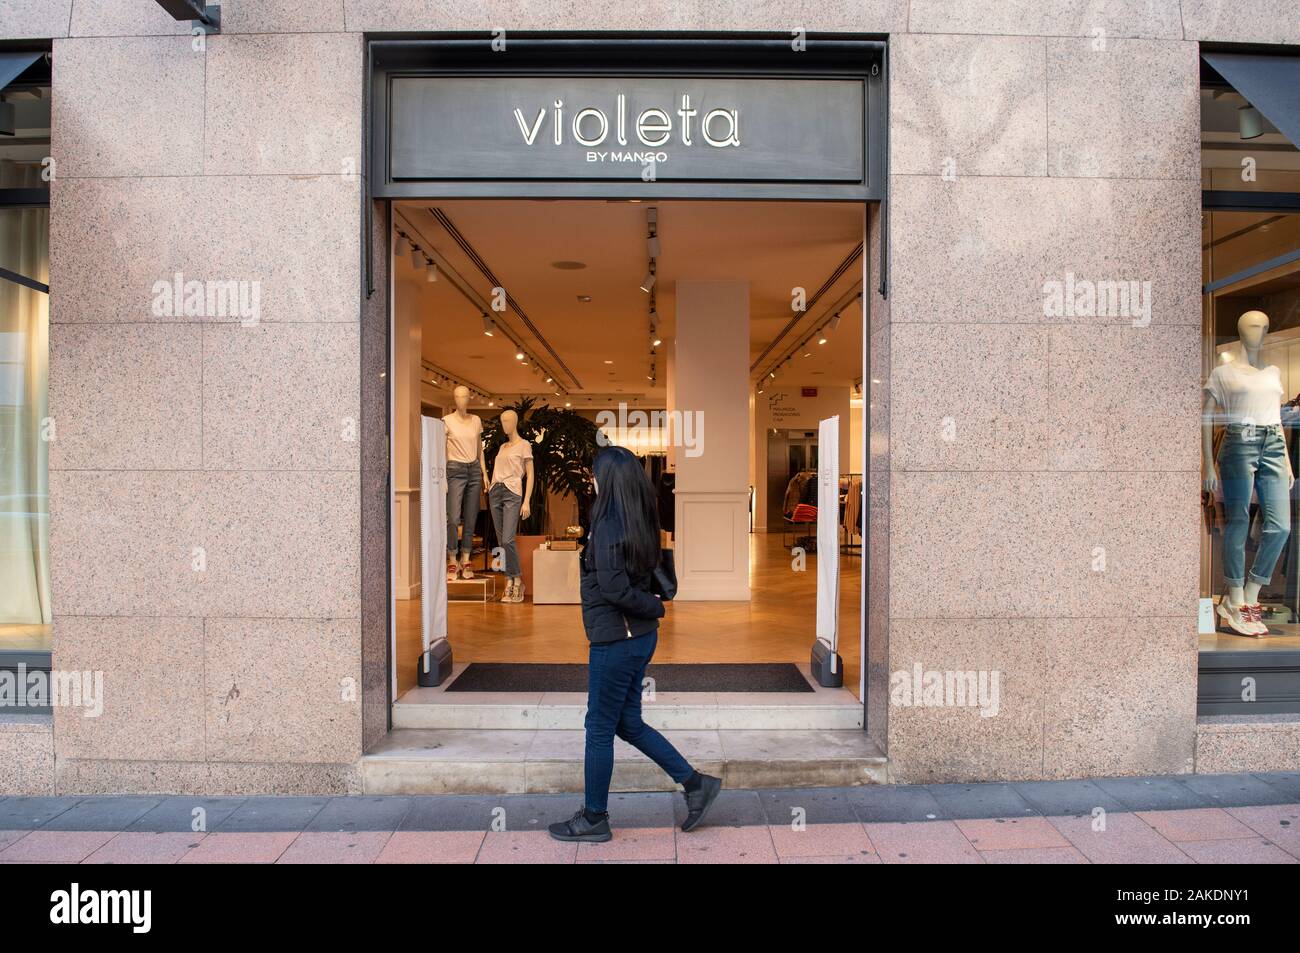 Marca de ropa propiedad Mando, Violeta, visto en España Fotografía de stock - Alamy